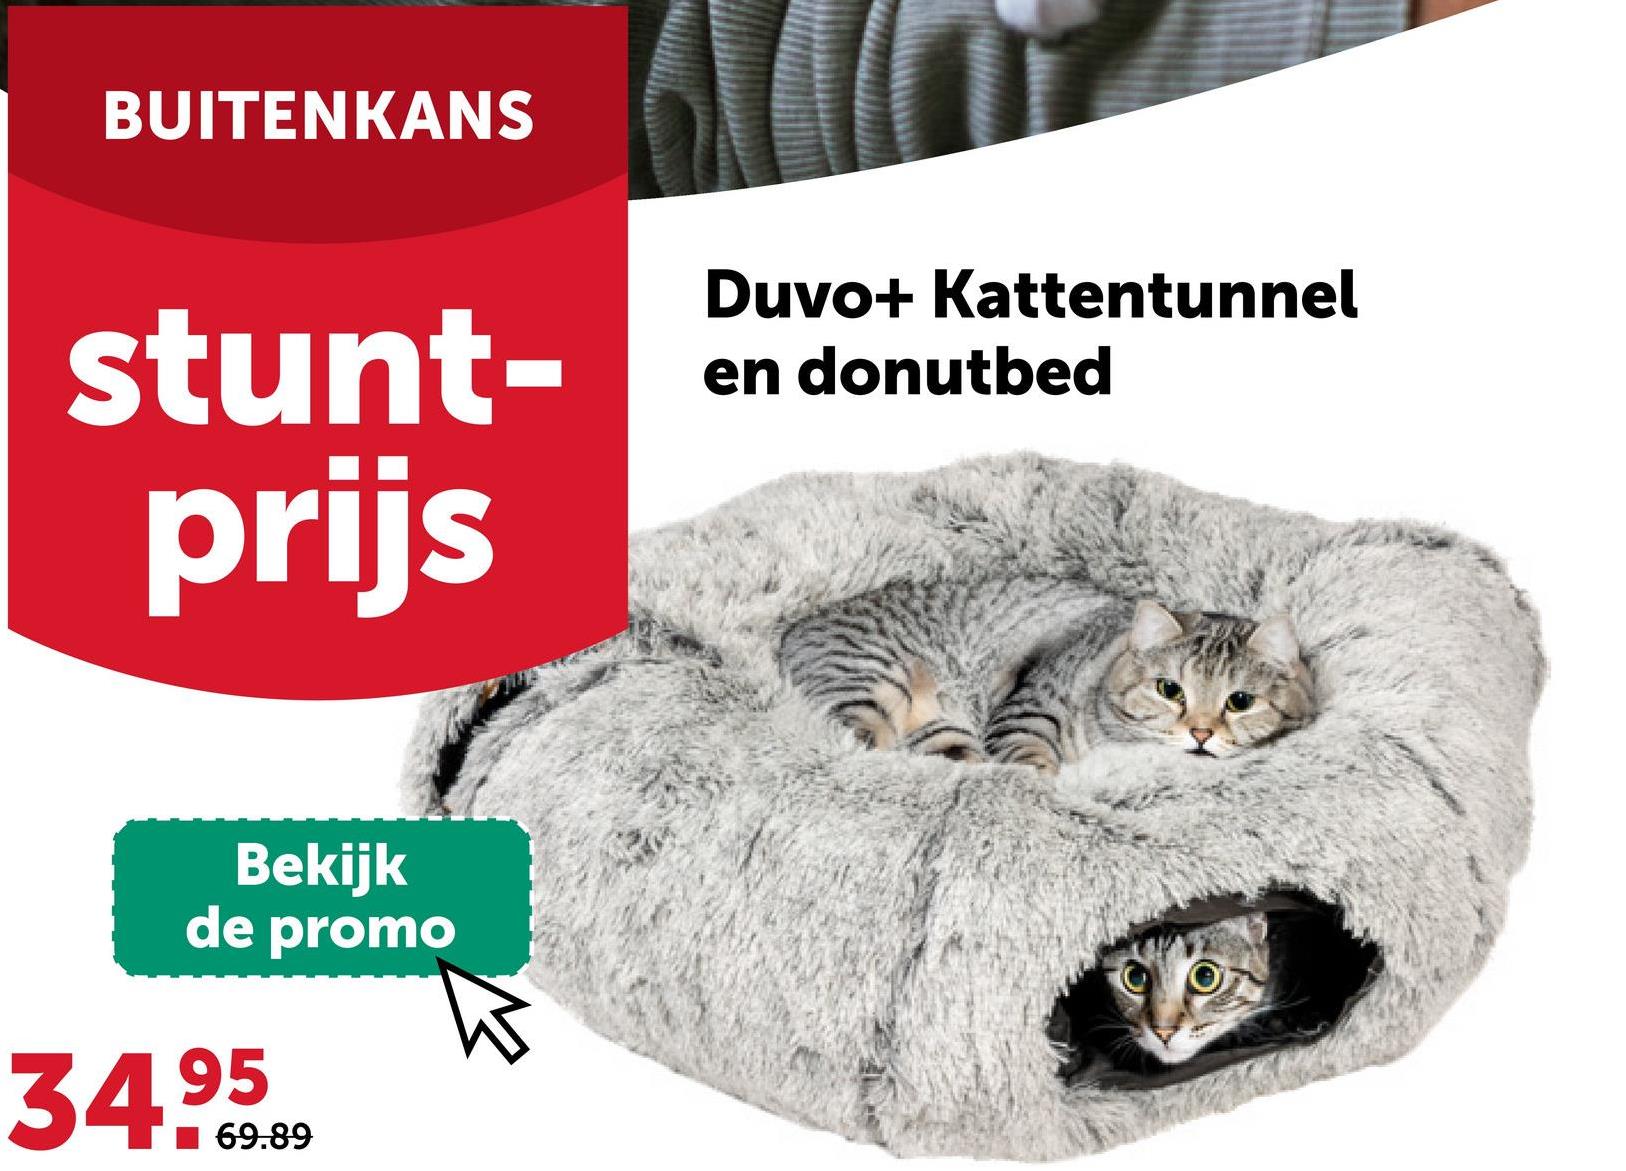 BUITENKANS
stunt-
prijs
Duvo+ Kattentunnel
en donutbed
Bekijk
de promo
34.95
69.89